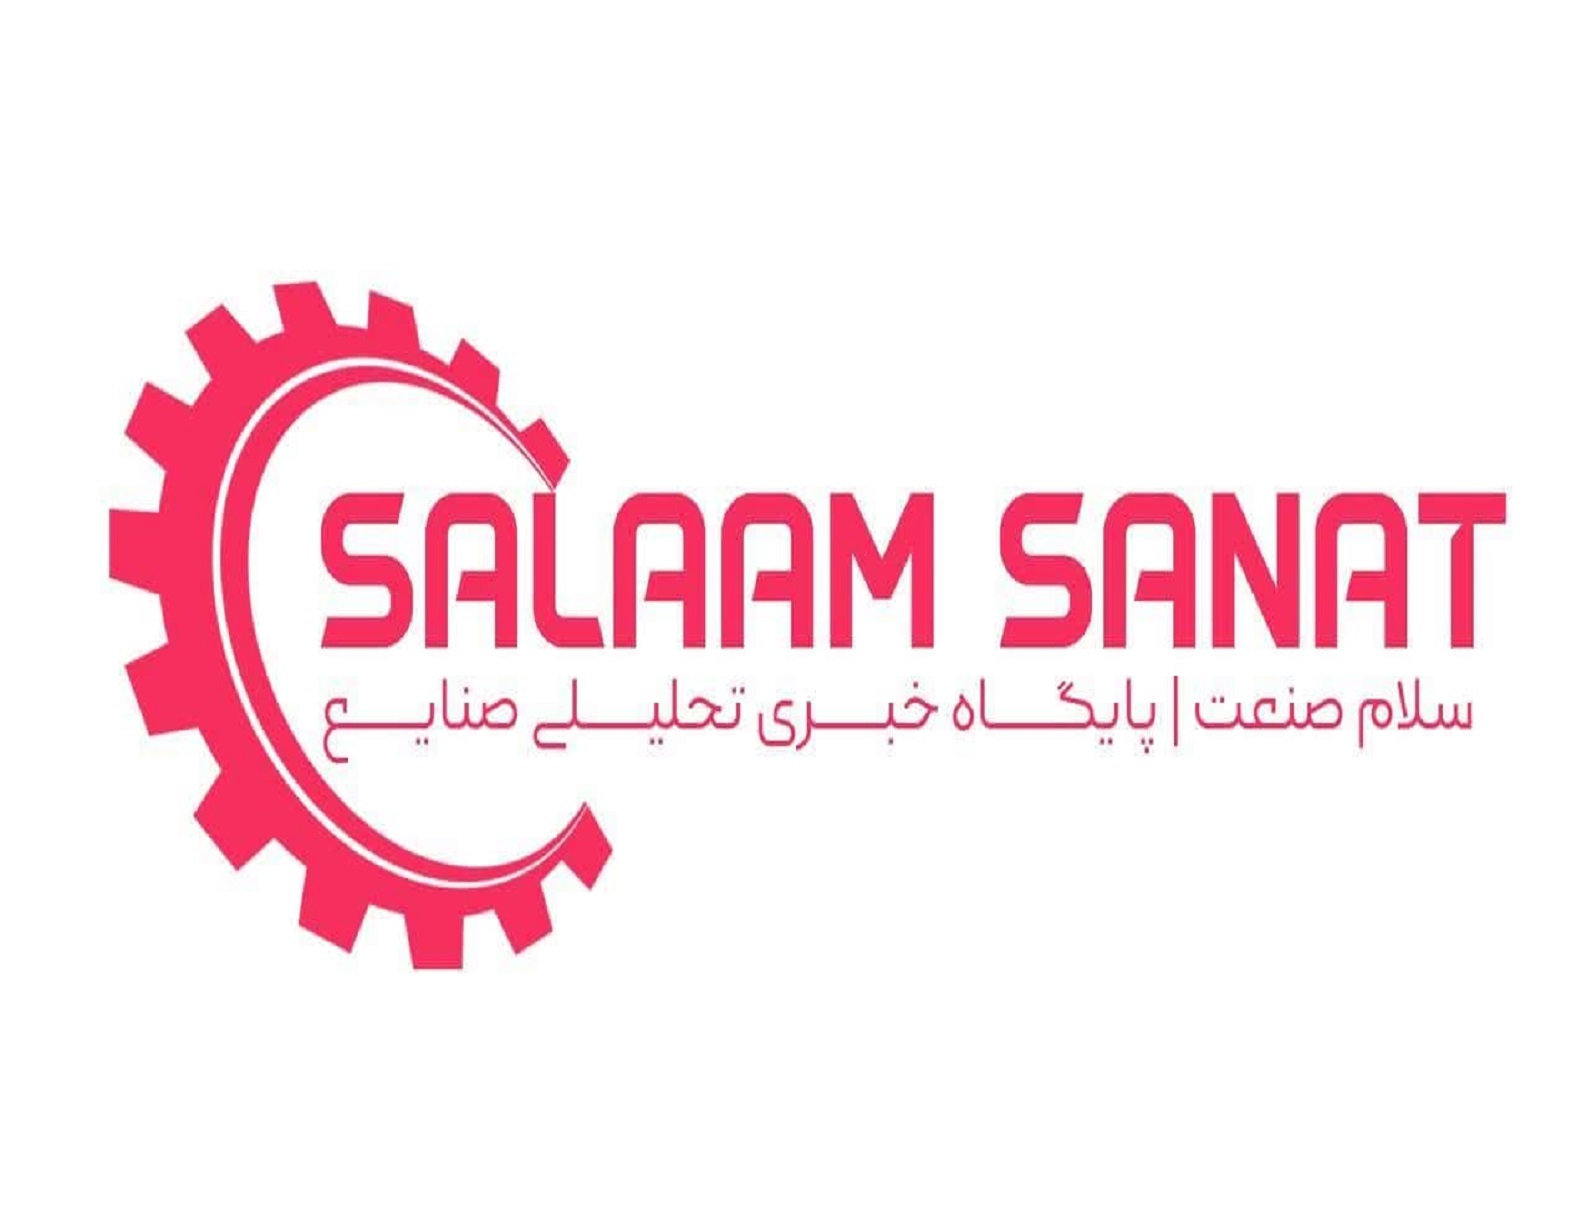 www.salaamsanat.ir